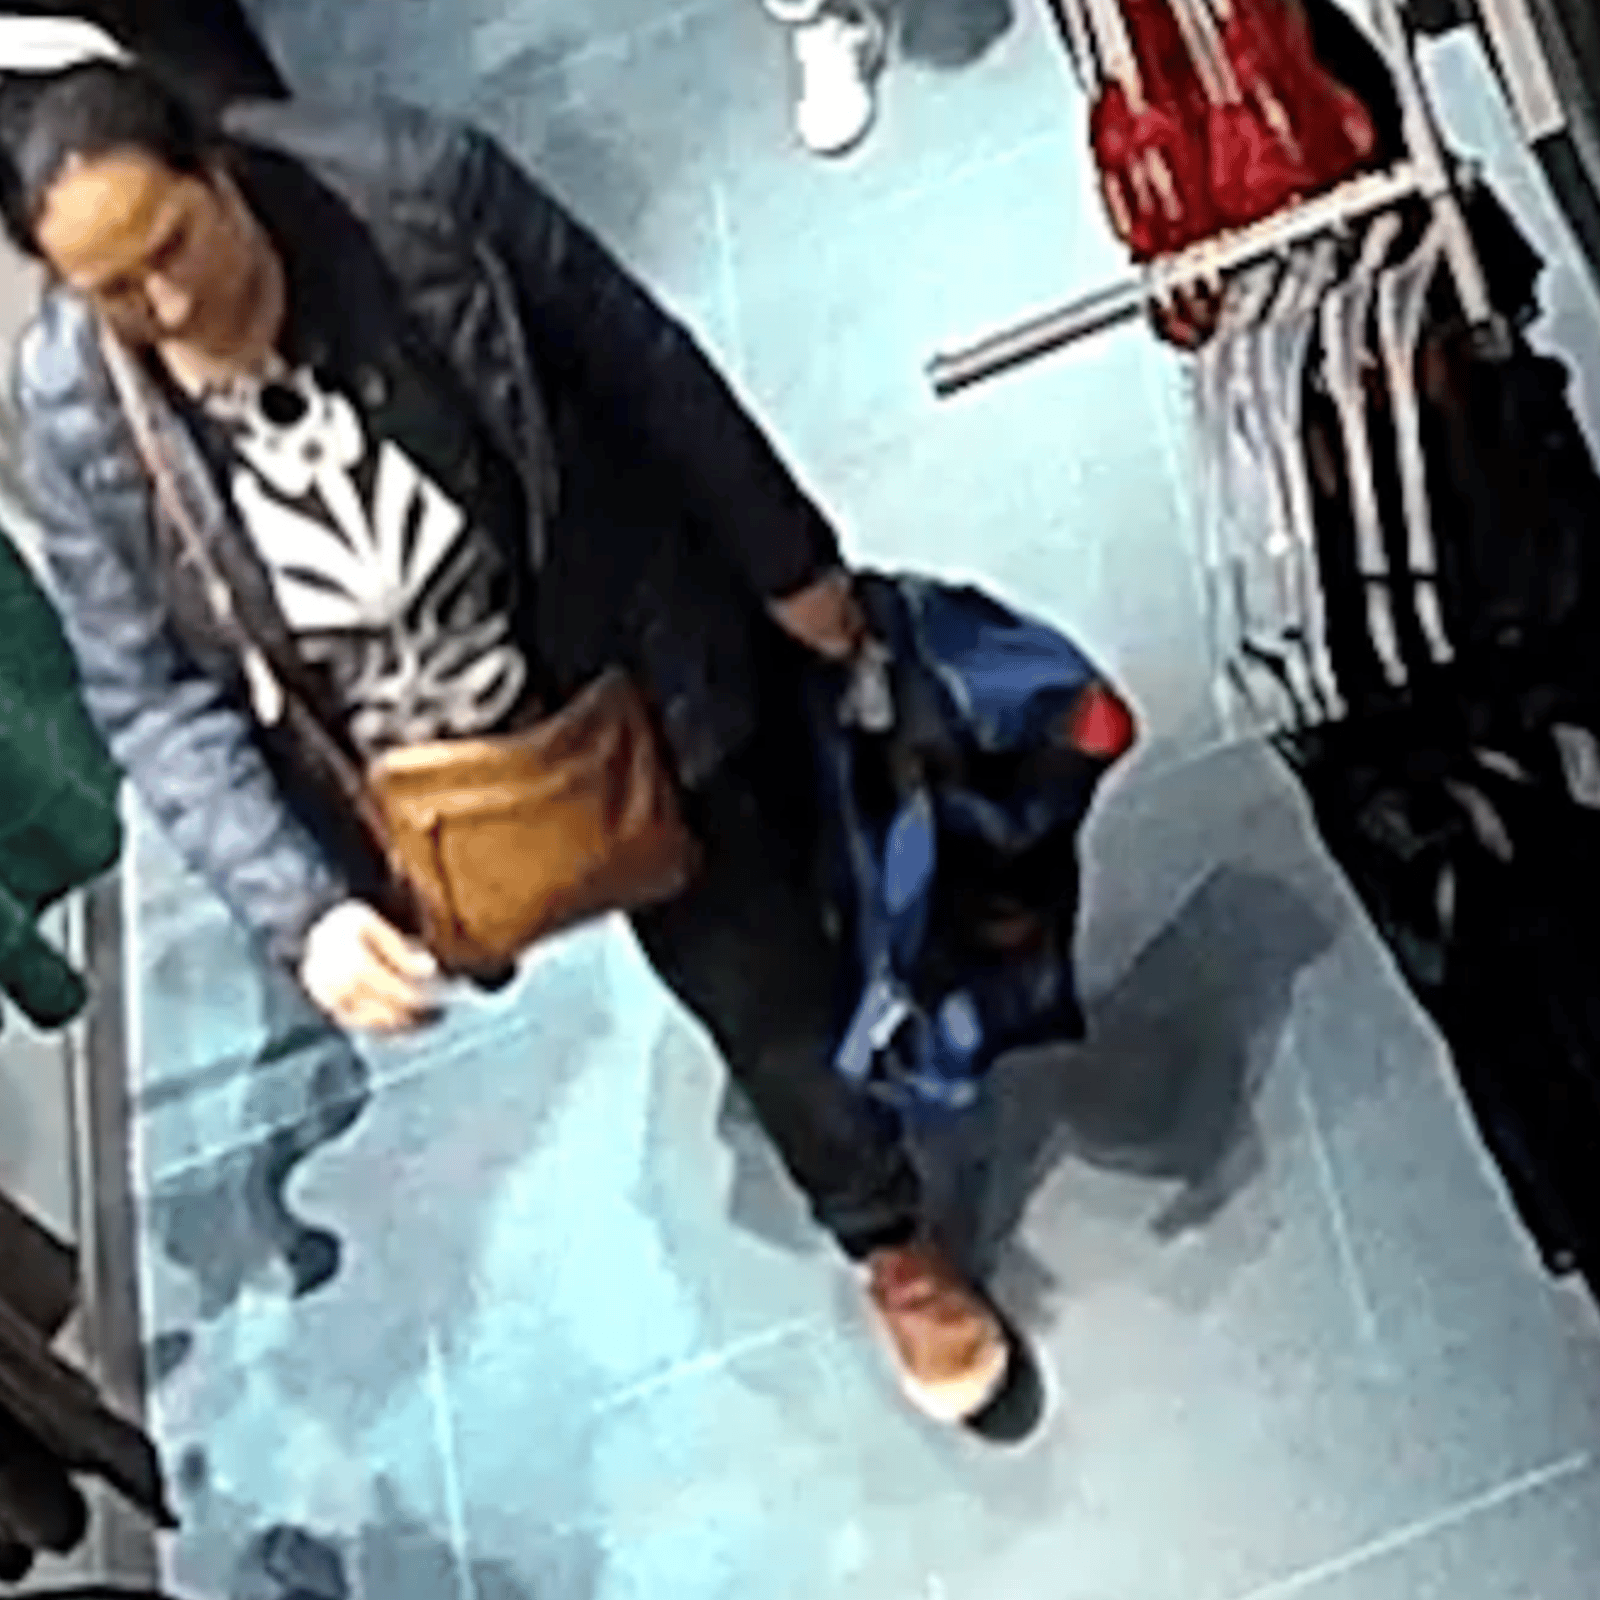 La police est à la recherche d'une femme suspectée d'un vol de plus de 1000$ dans un magasin